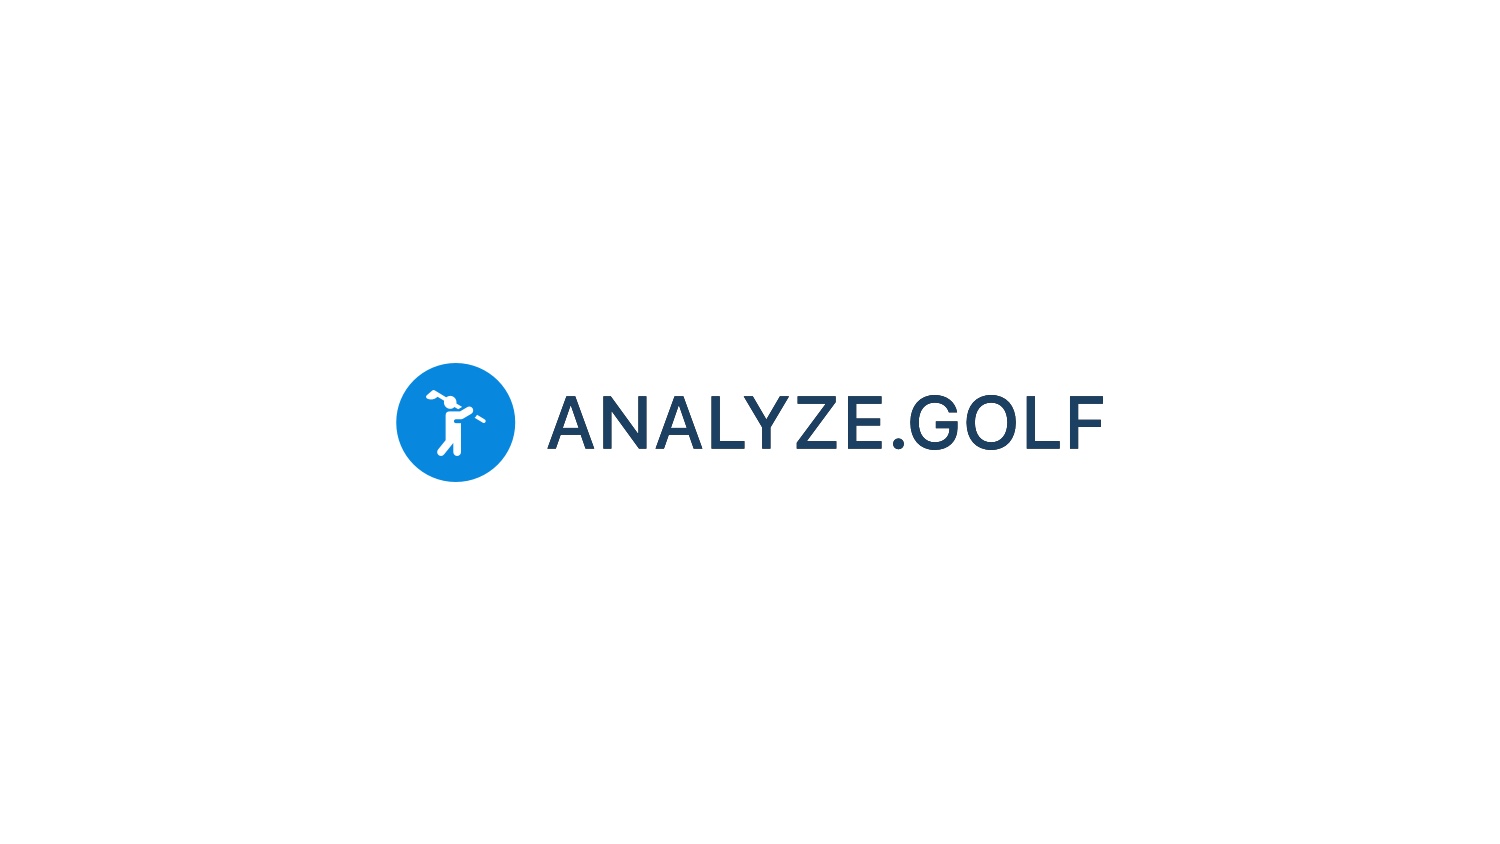 analyze.golf